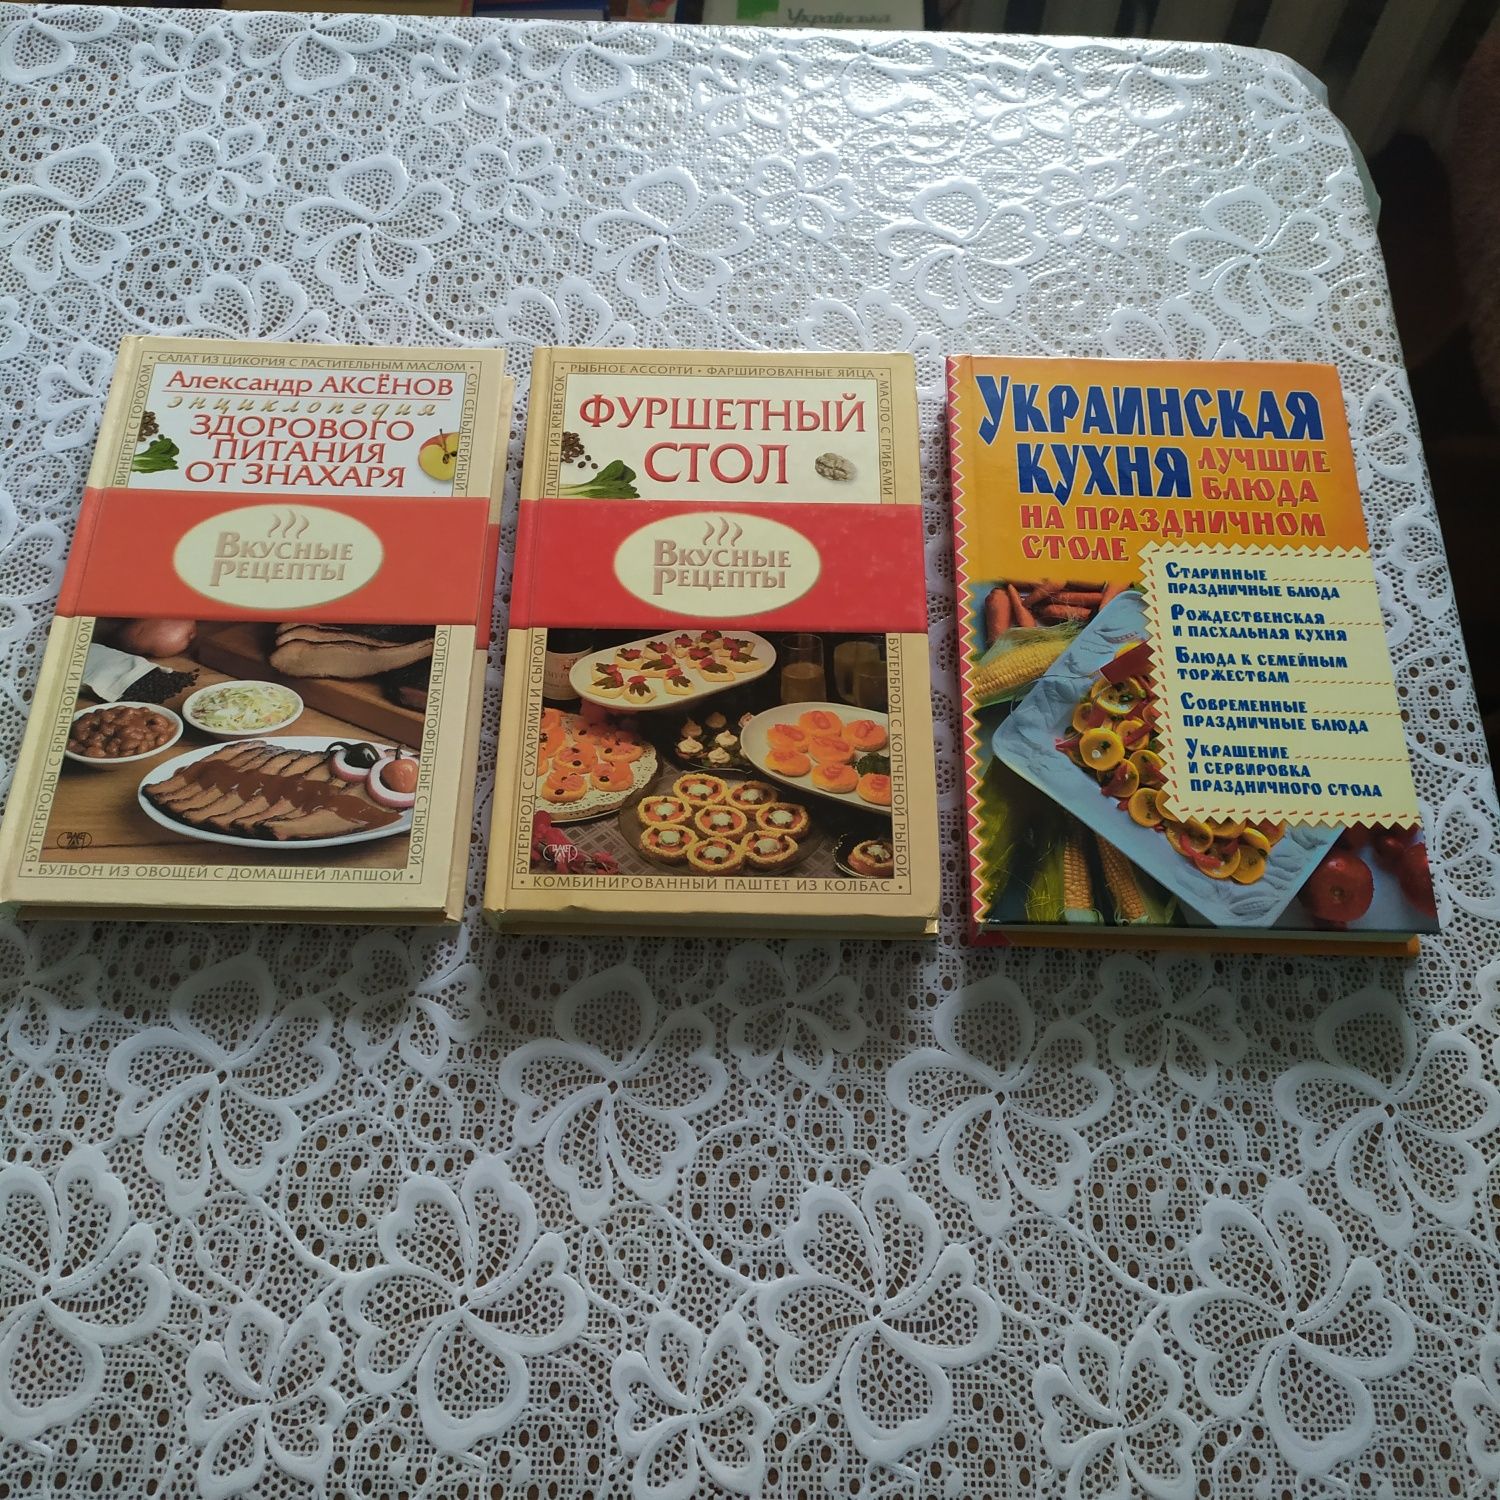 Книги Аксенова о питании,Украинская кухня, товароведение и брошюры